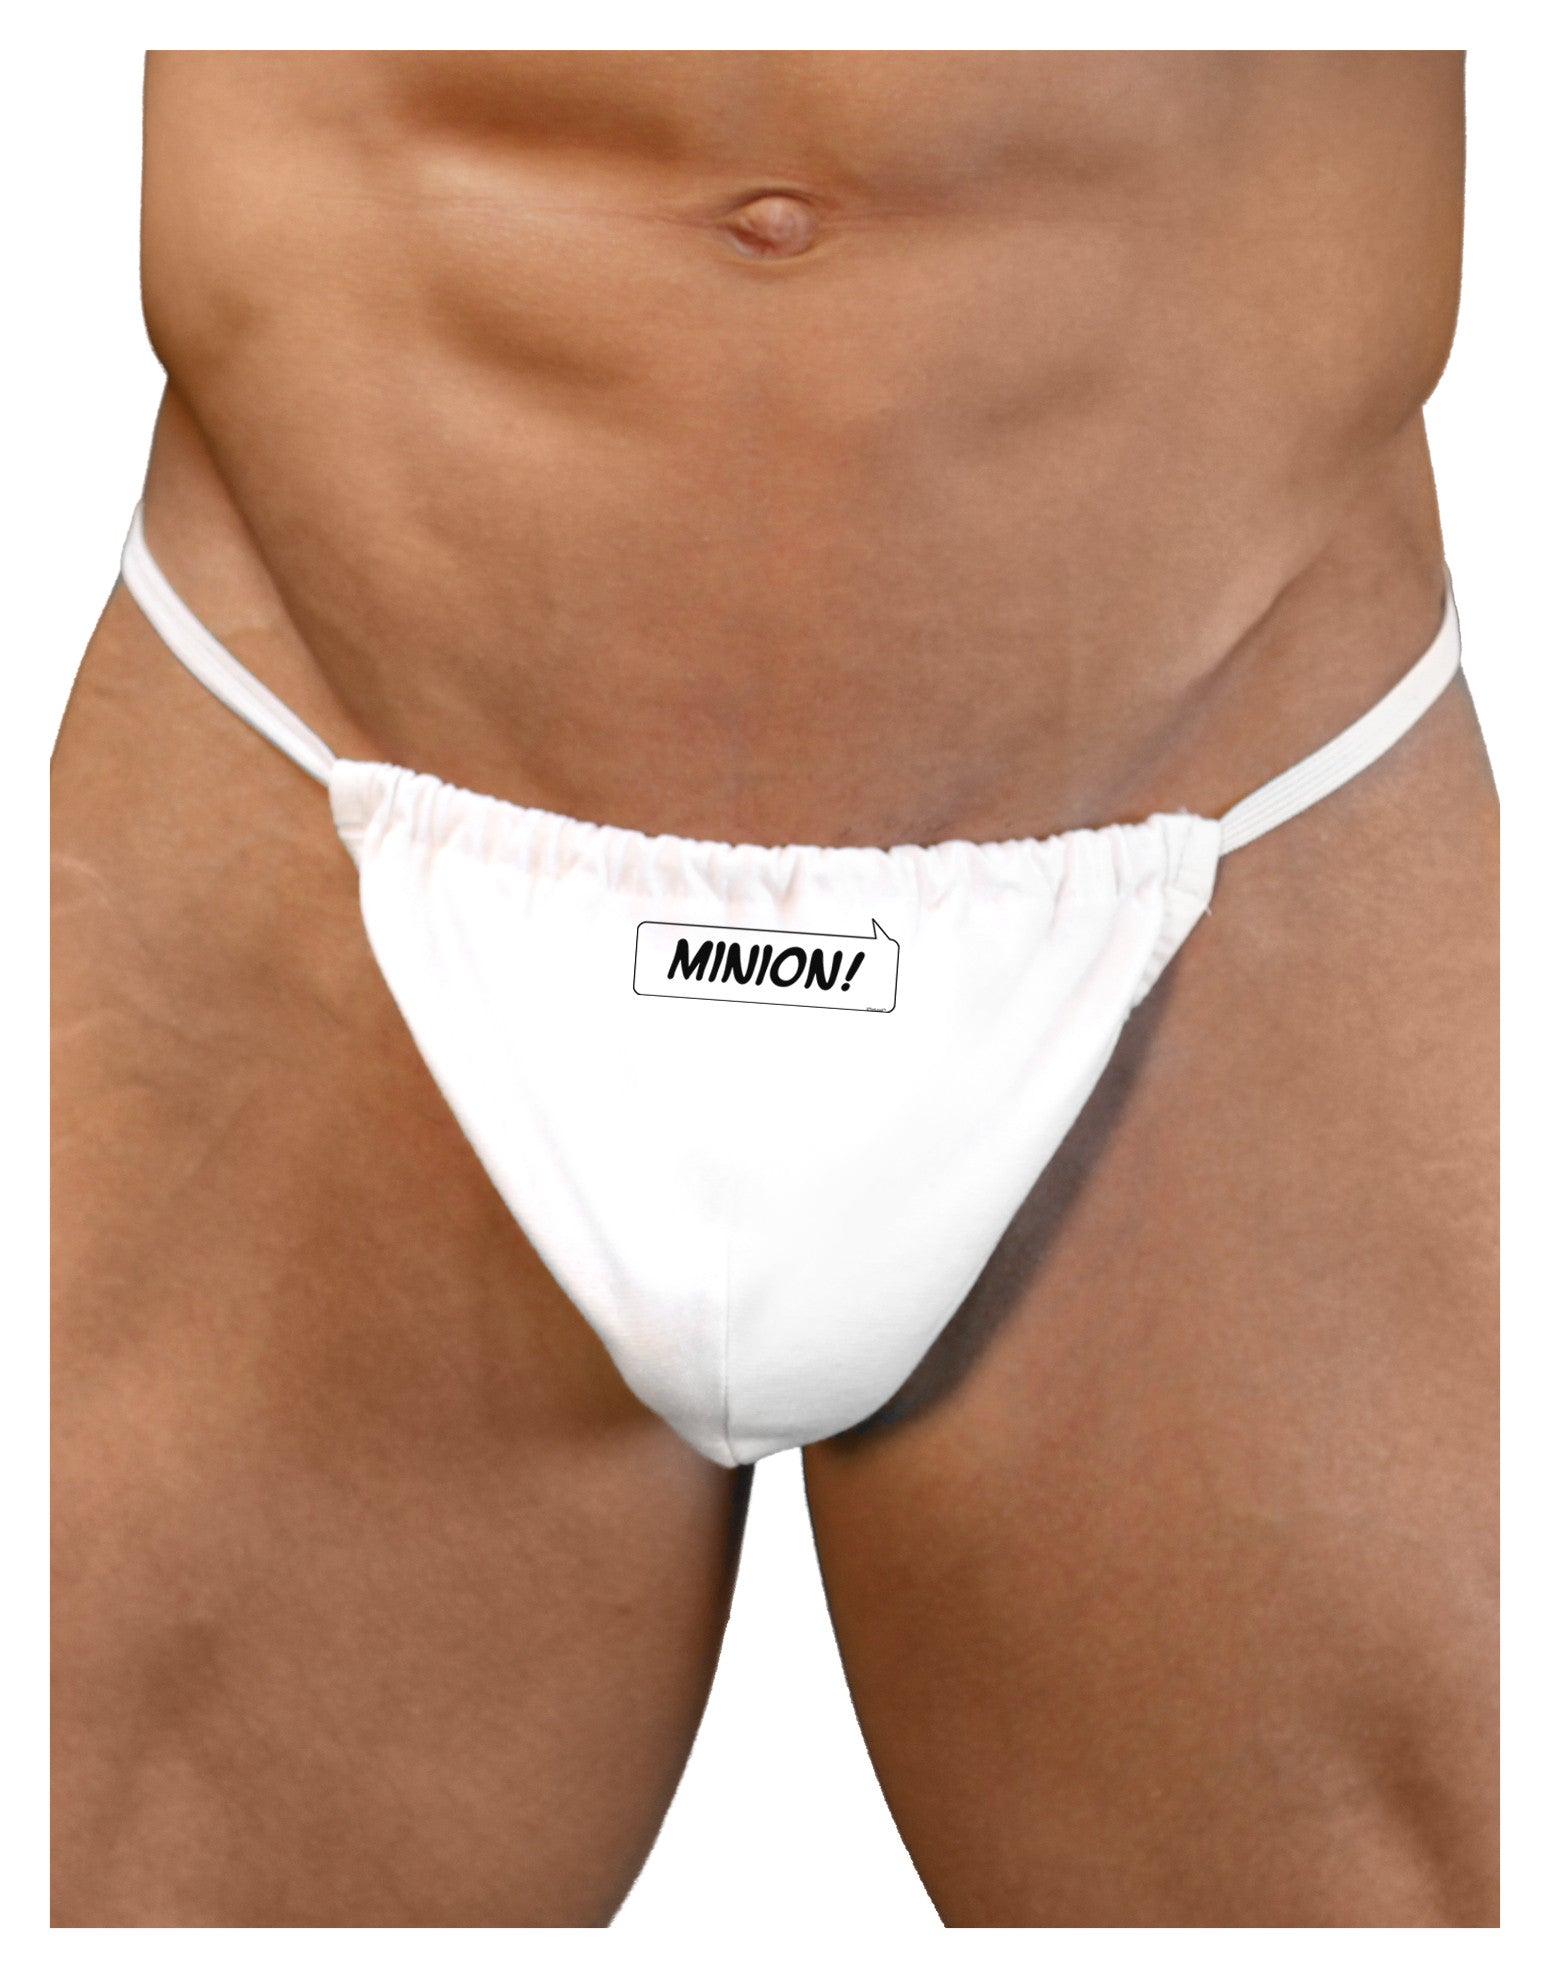 Minion Mens G-String Underwear - Davson Sales